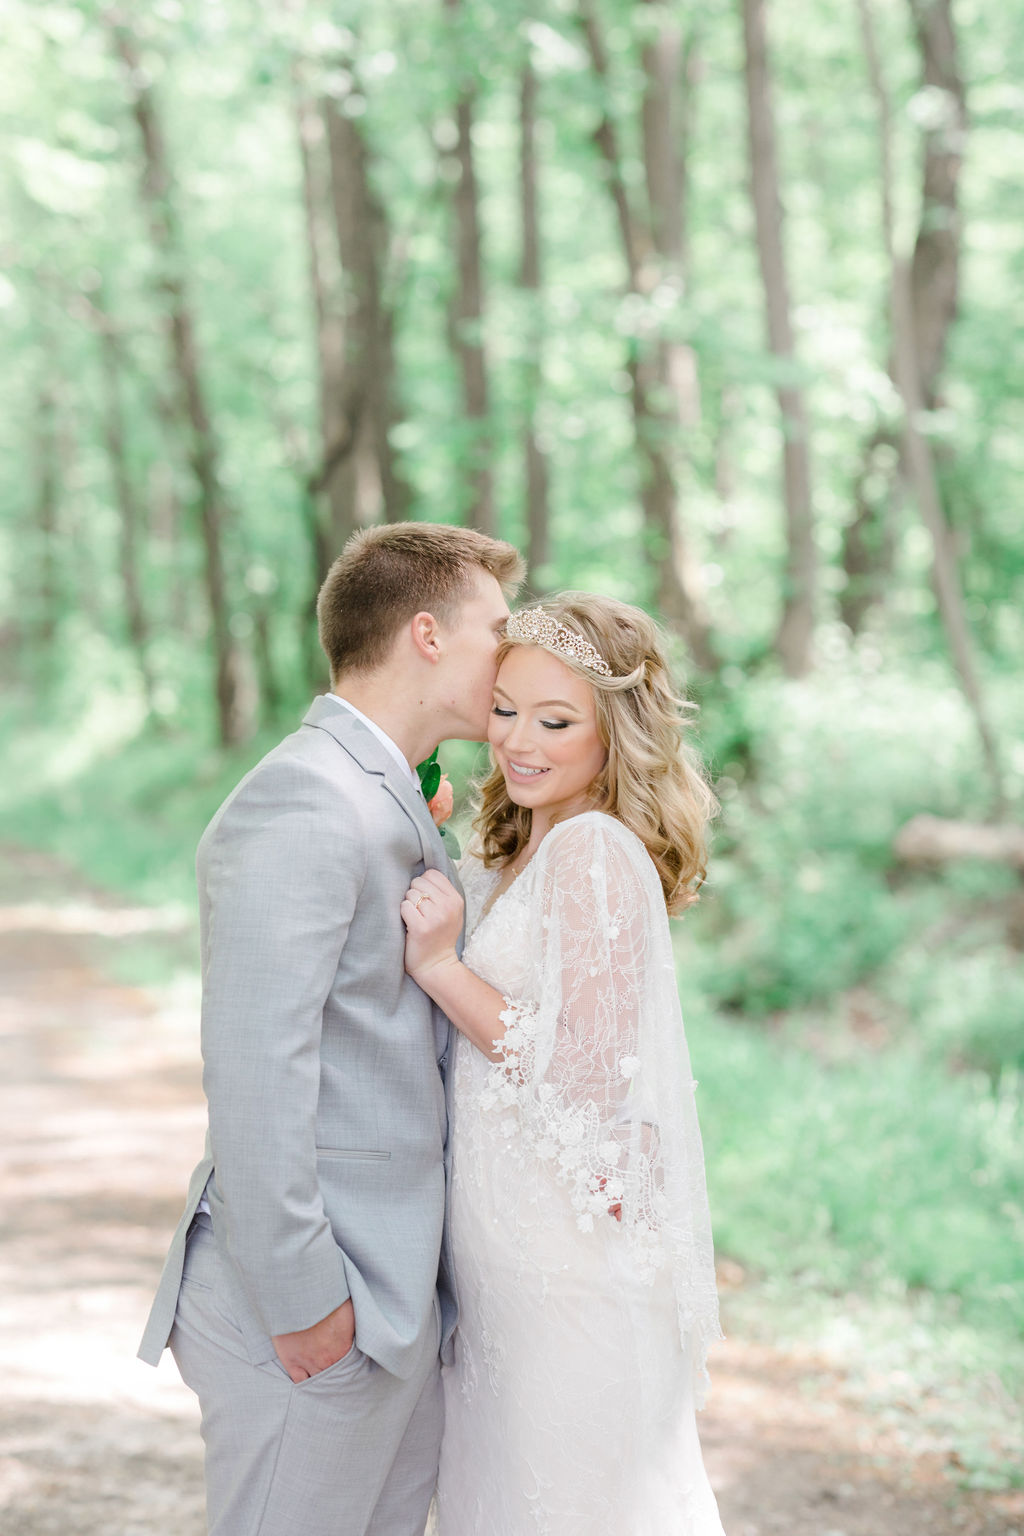 Real Wedding: Nicole & Jacob | David's Bridal Blog